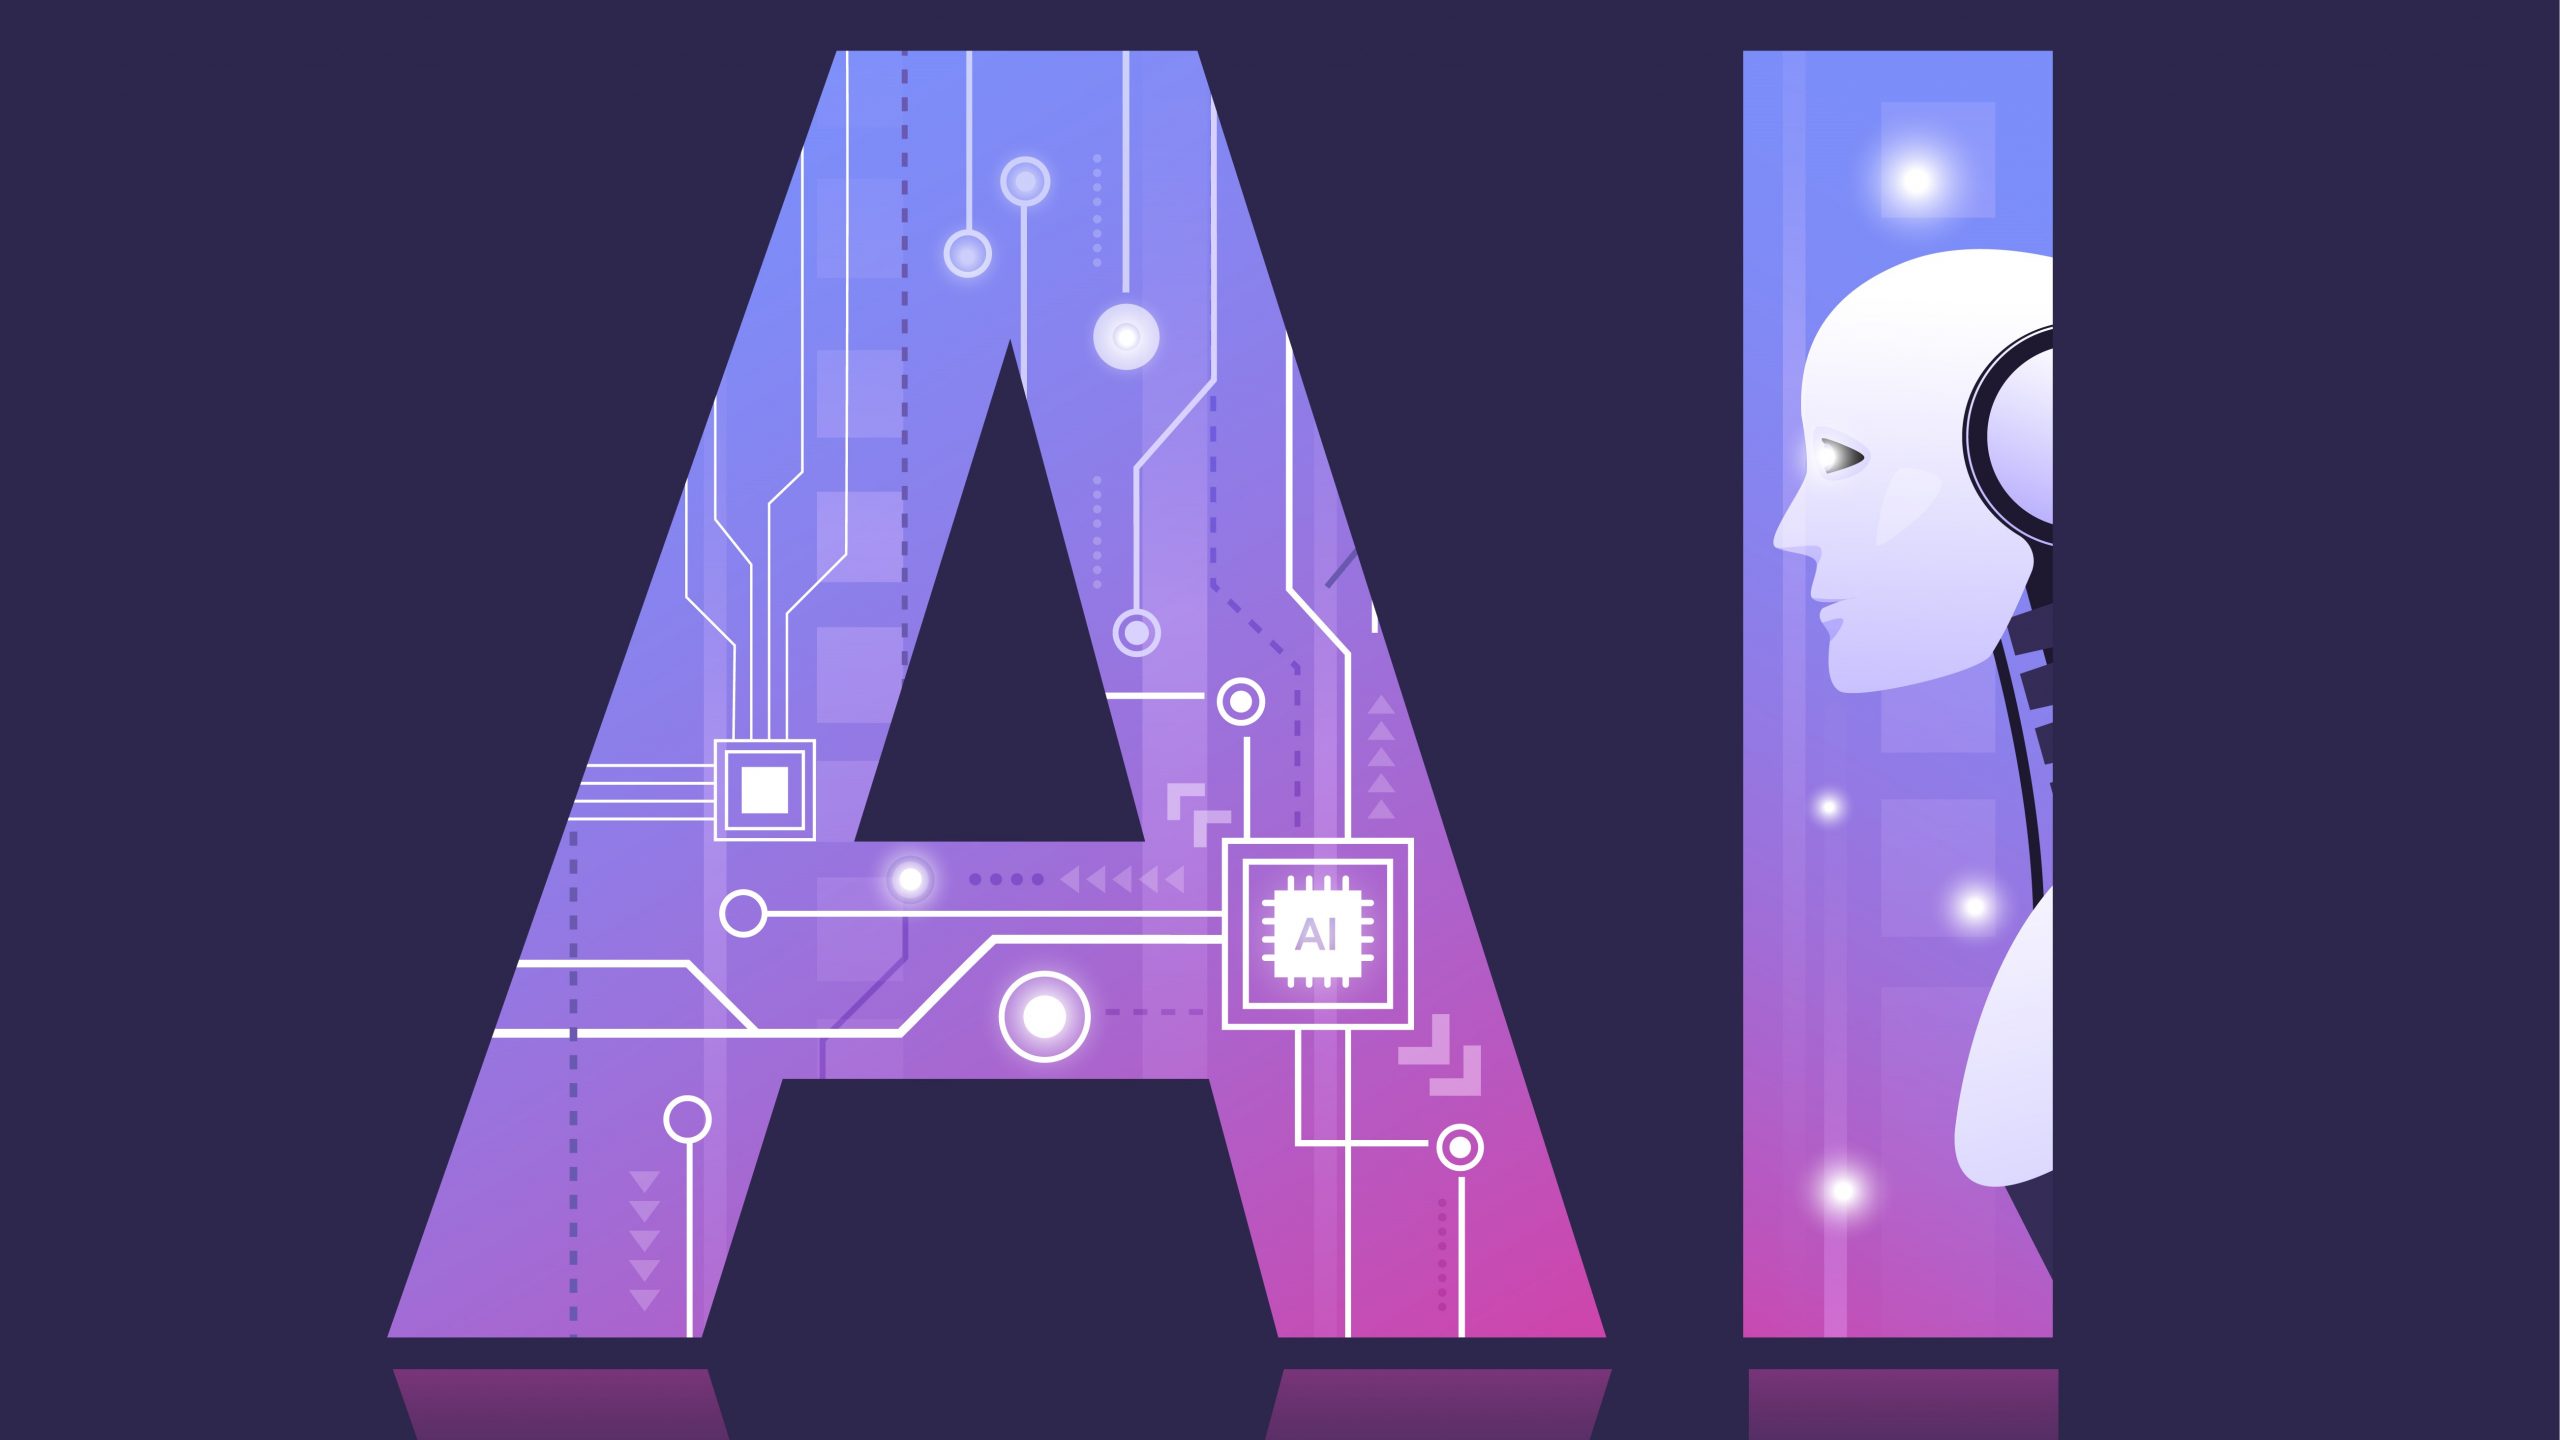 这是一张插图，展示了字母“A”内嵌有电路图样和人工智能AI芯片，旁边是一个代表AI的头像轮廓。整体风格科技感十足。